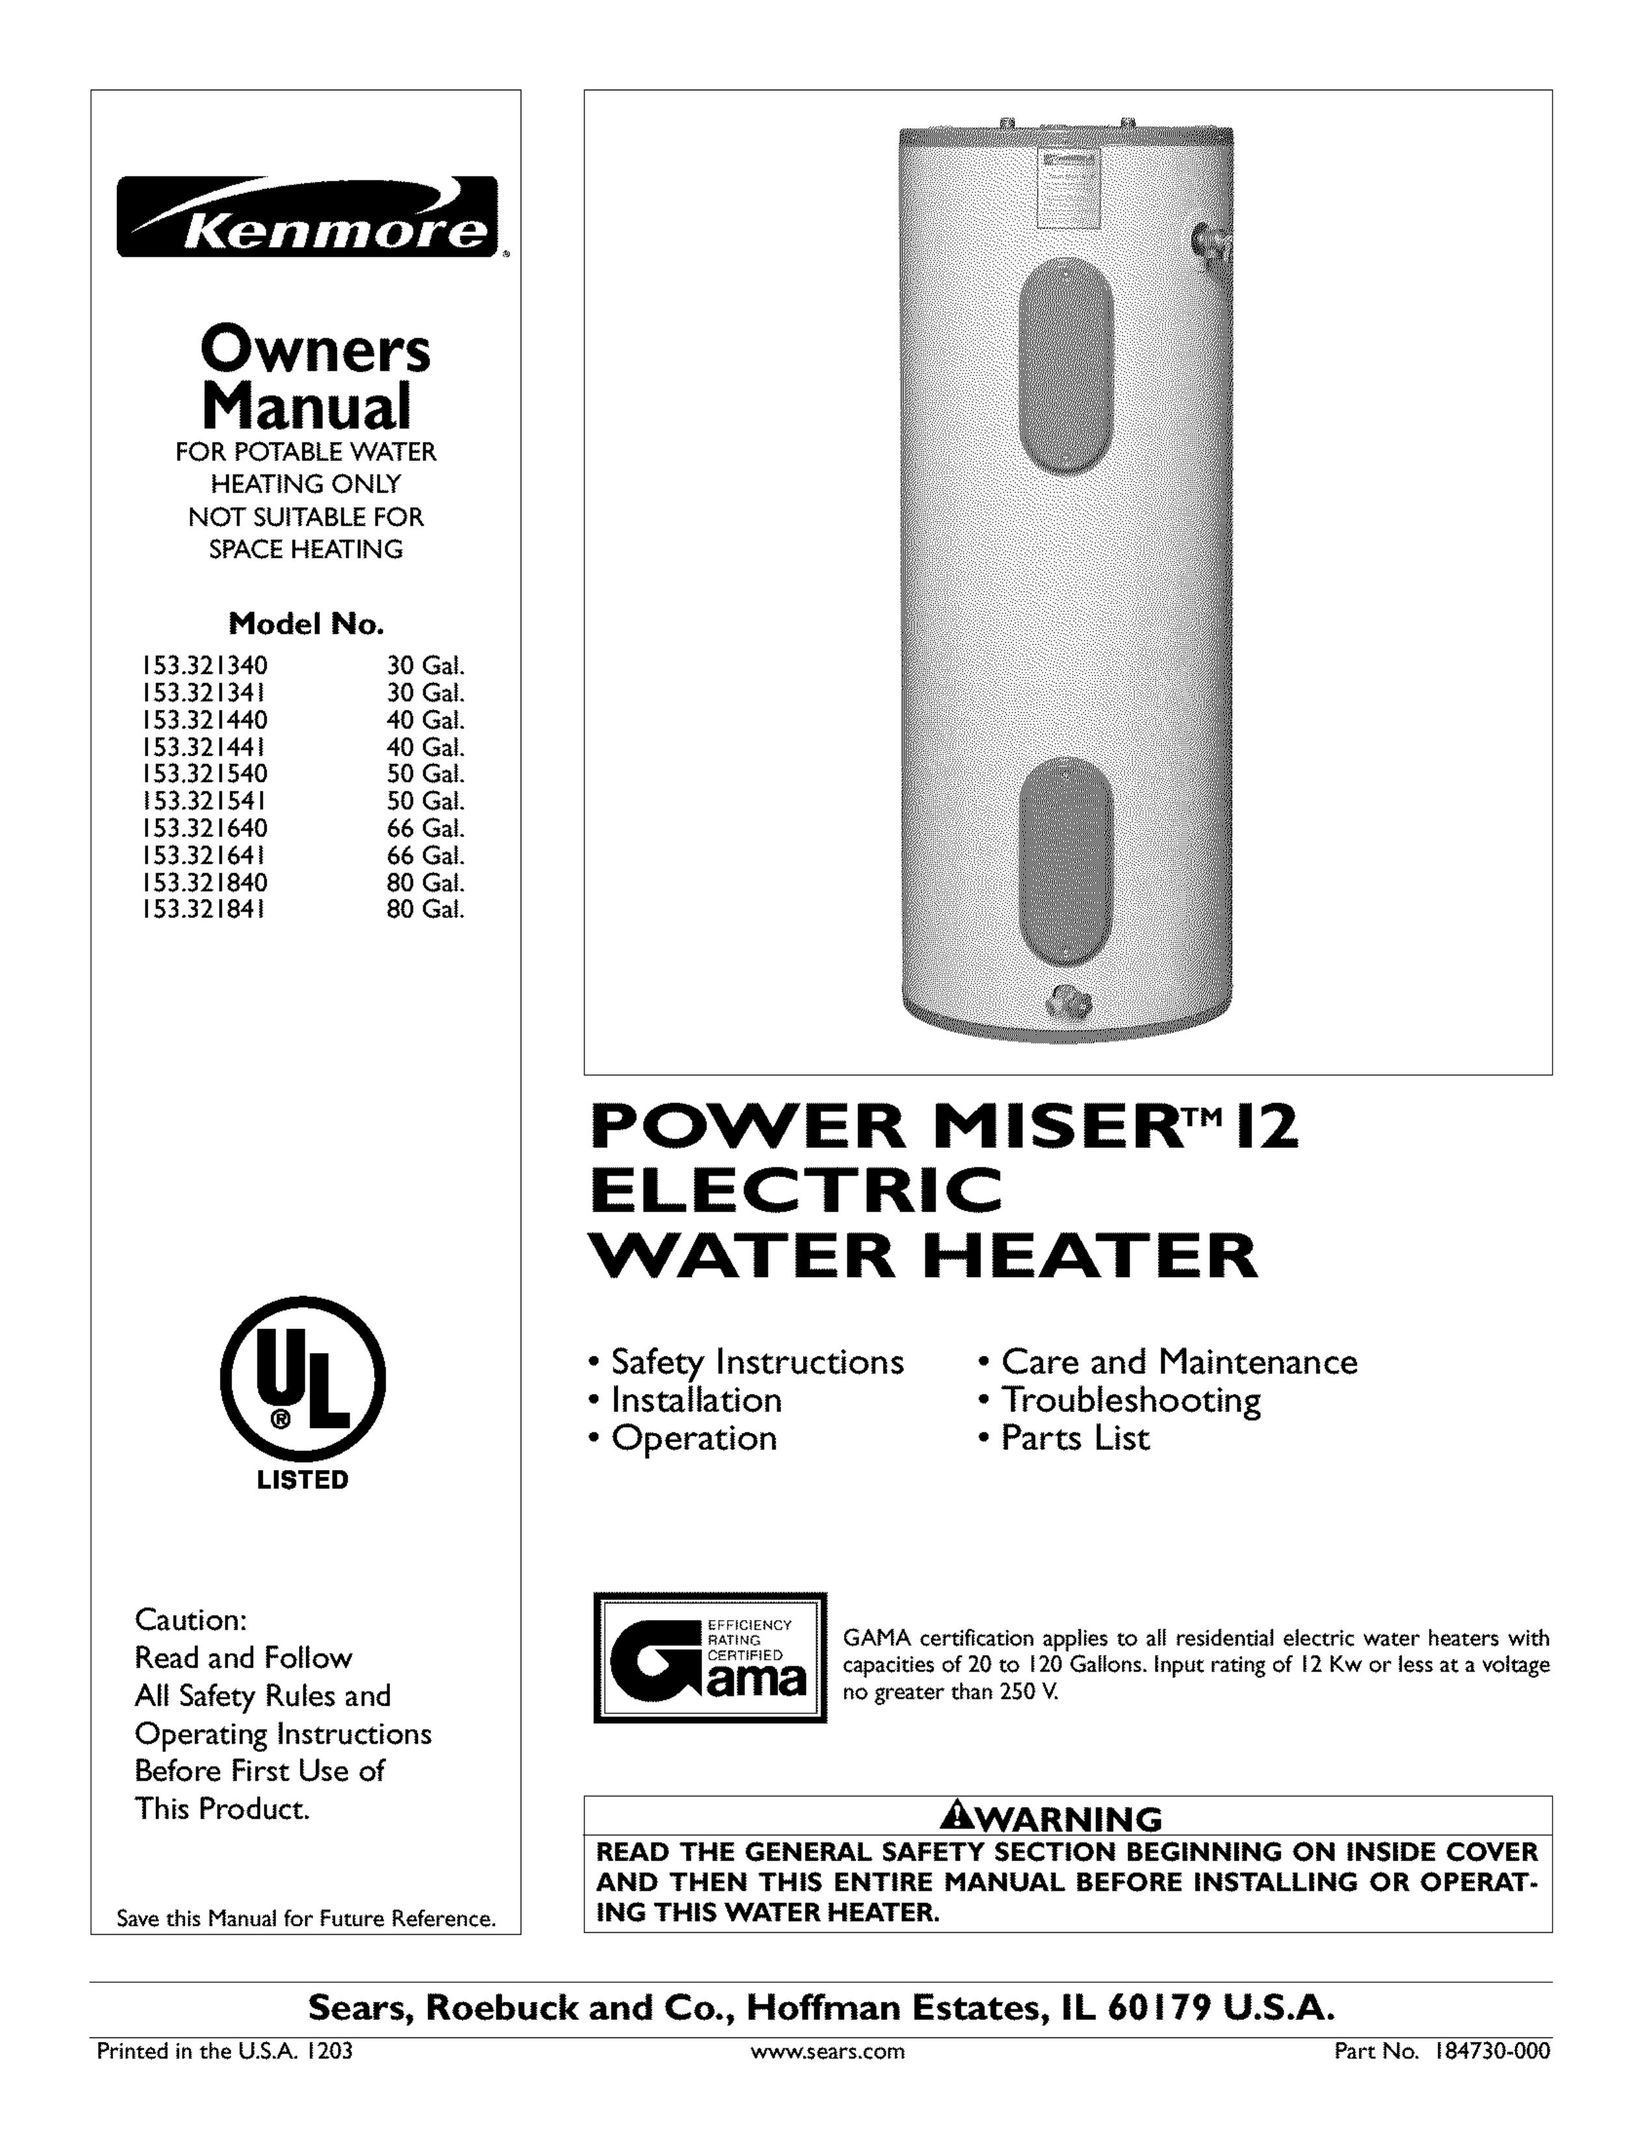 Kenmore 153.321441 Water Heater User Manual